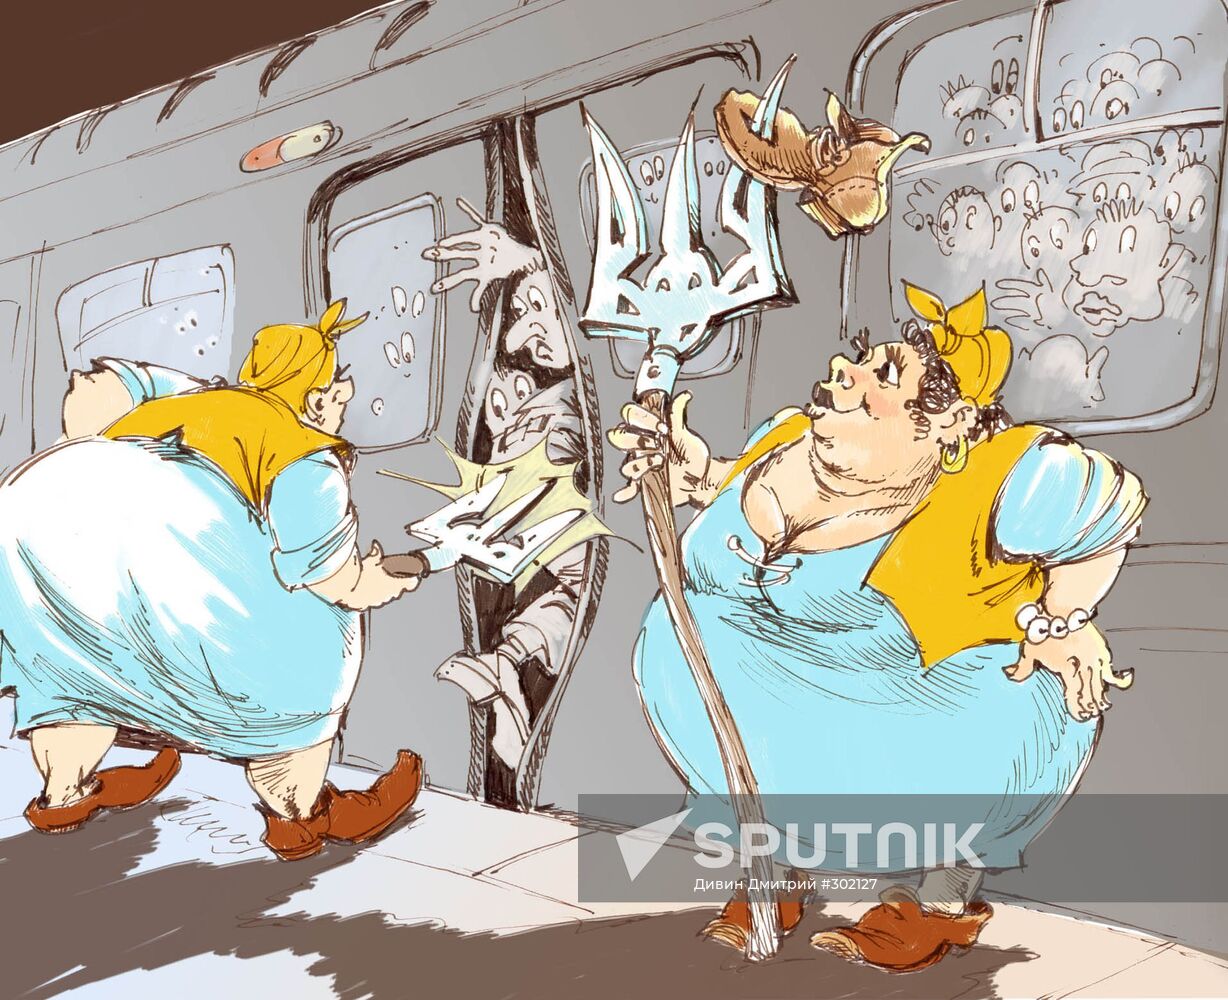 Polite passenger stuffing in Kiev underground